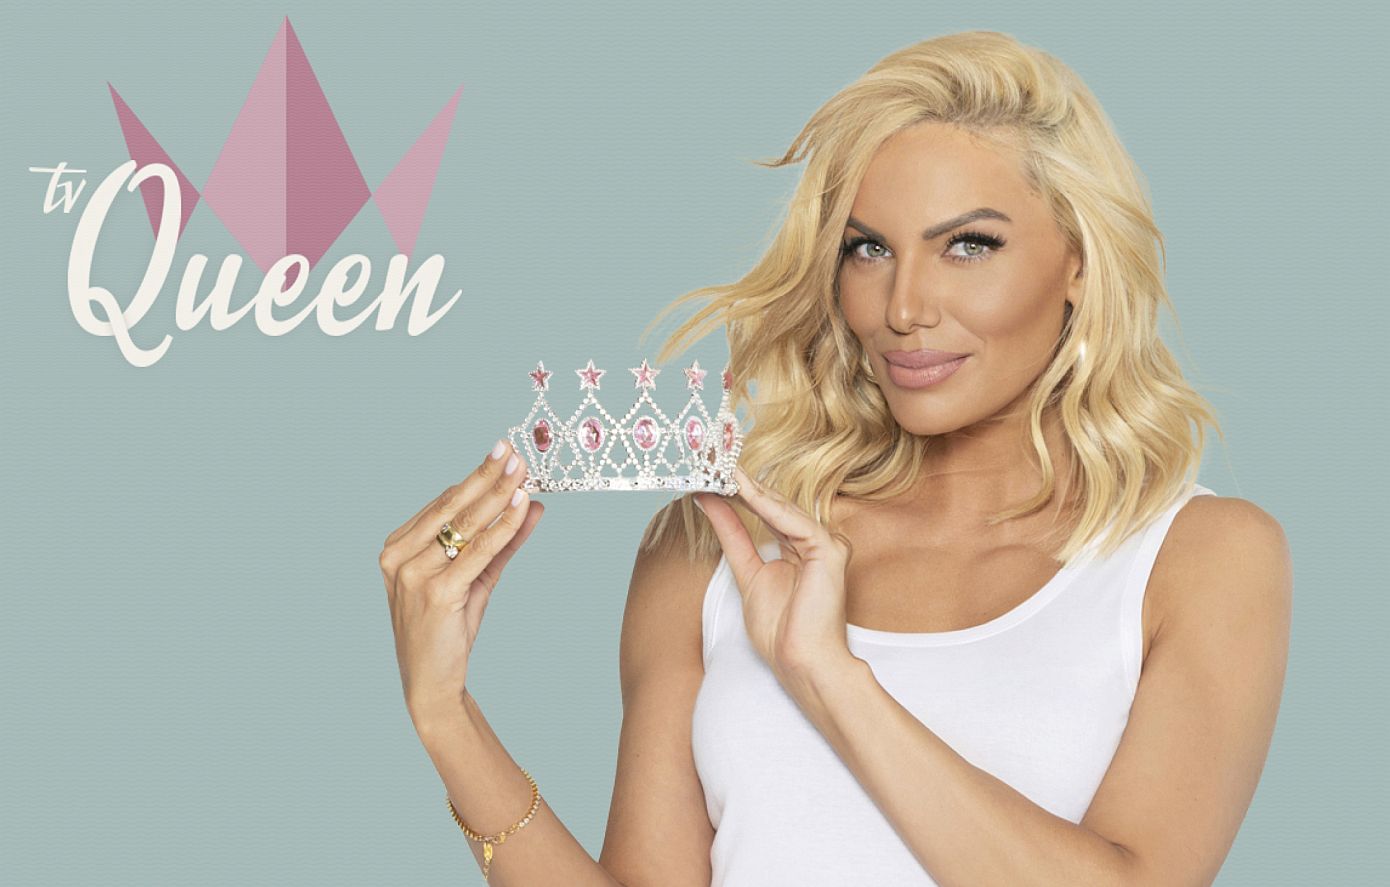 Το Tv Queen έρχεται στην τηλεόραση του OPEN απόψε στις 9 το βράδυ &#8211; Παρουσιάζει η Ιωάννα Μαλέσκου